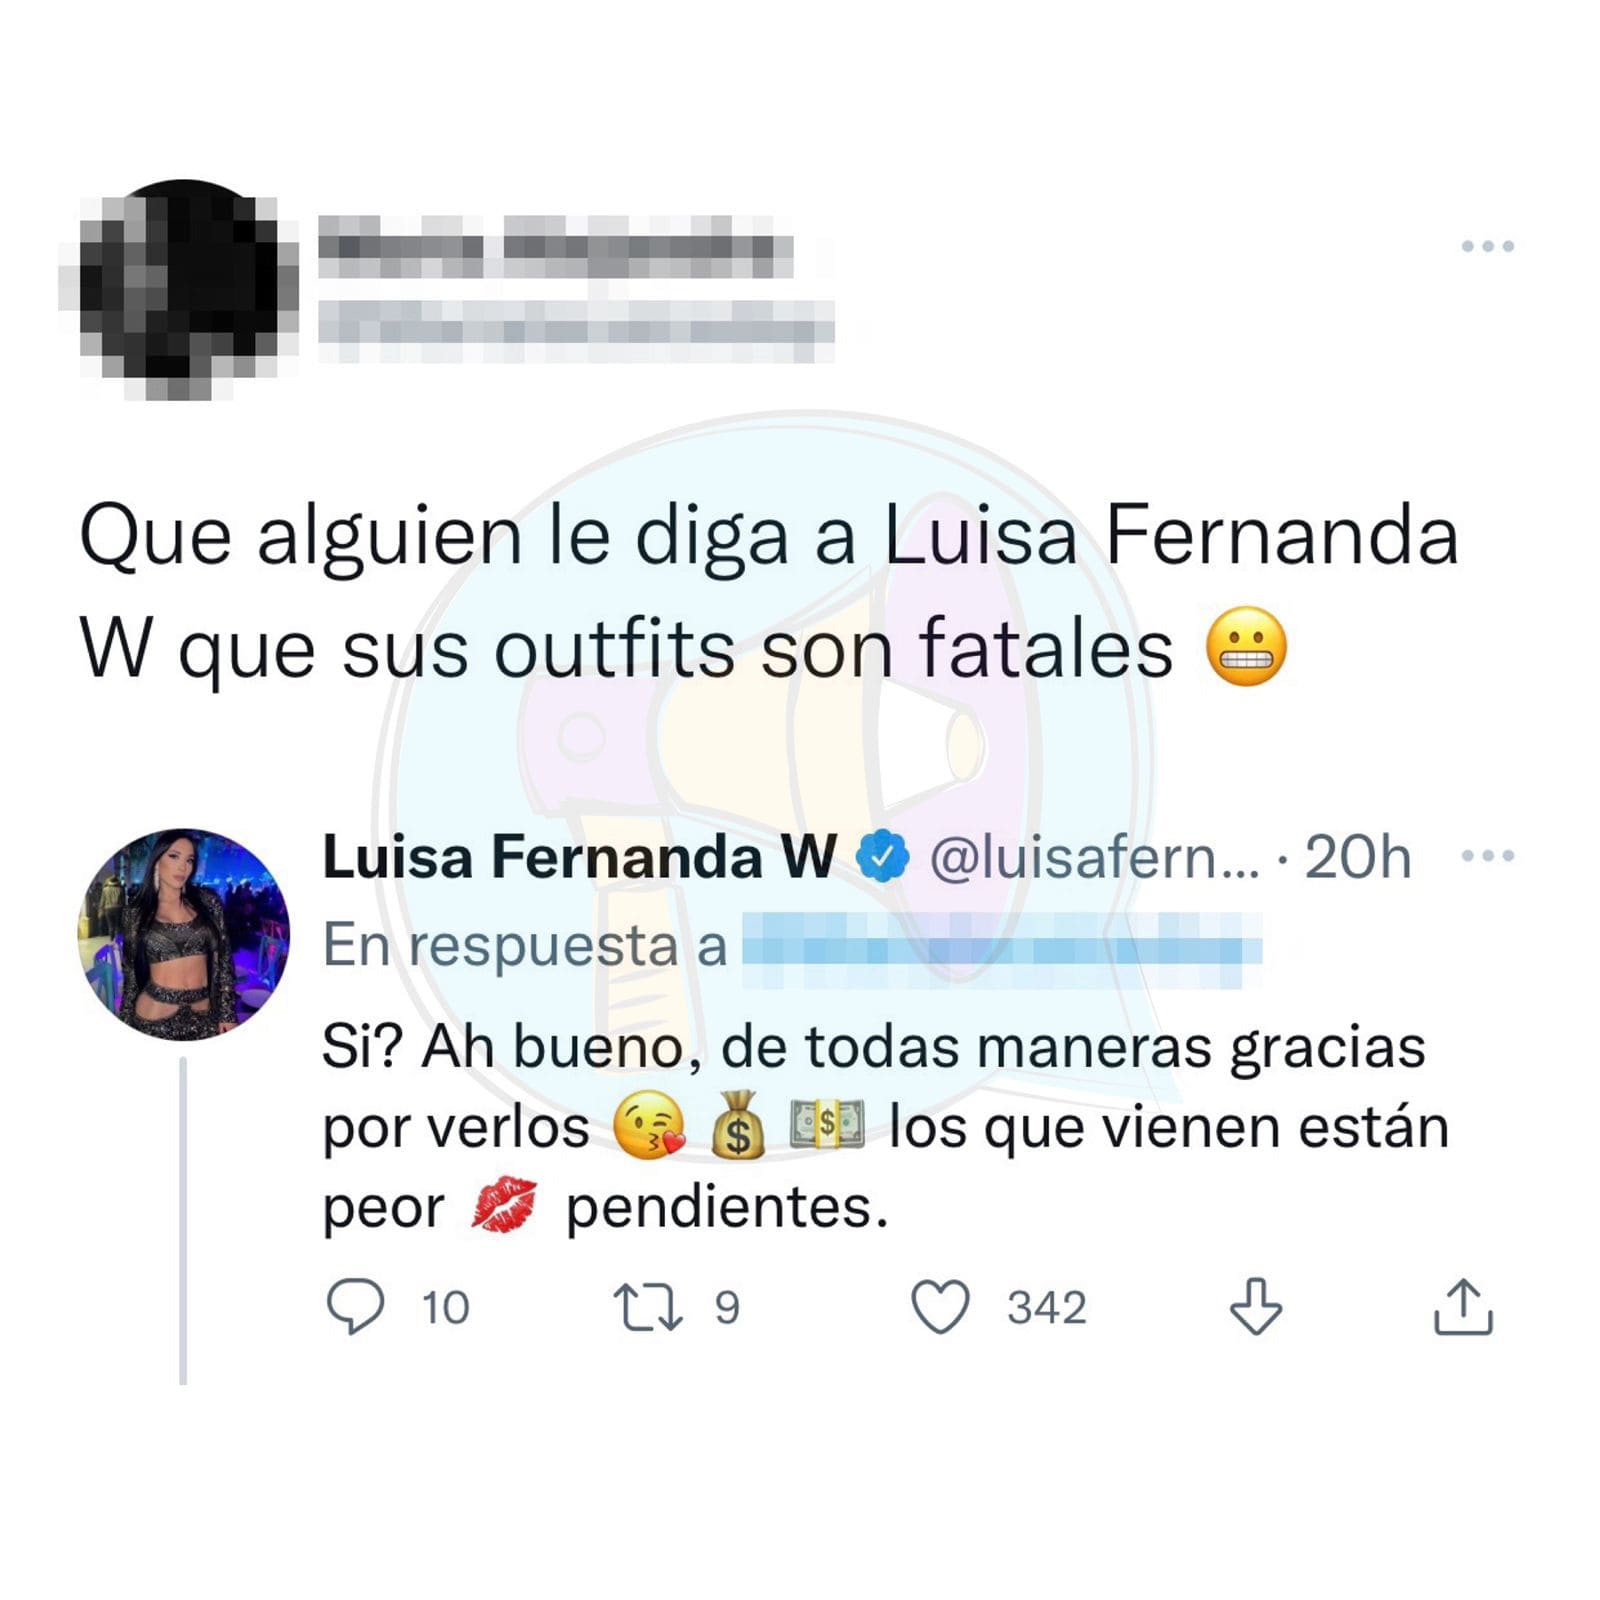 LUISA FERNANDA W